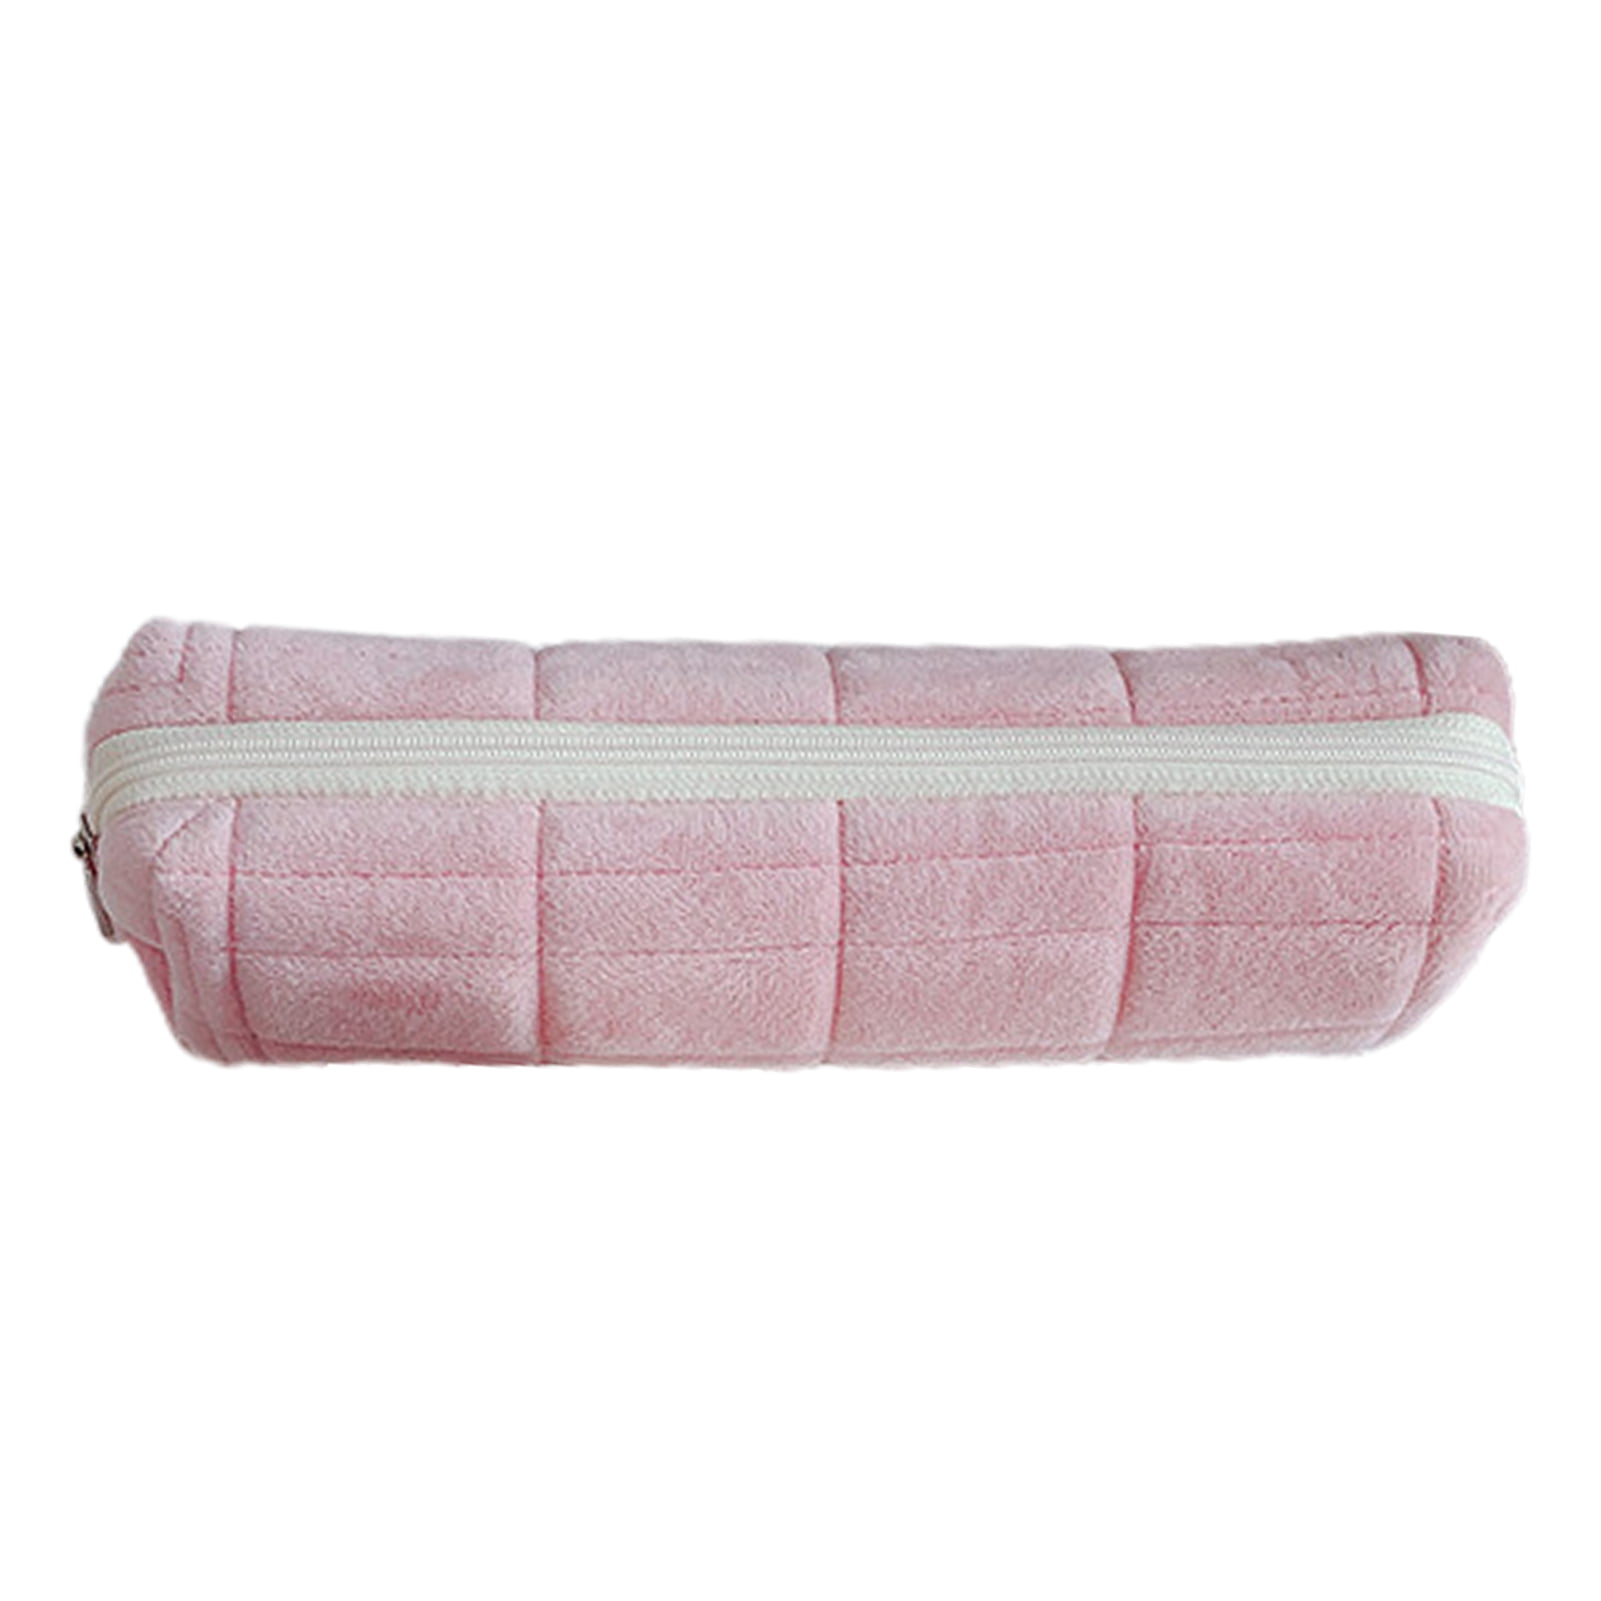 Light Pink Pencil Pouch - Fur – MARKET 99